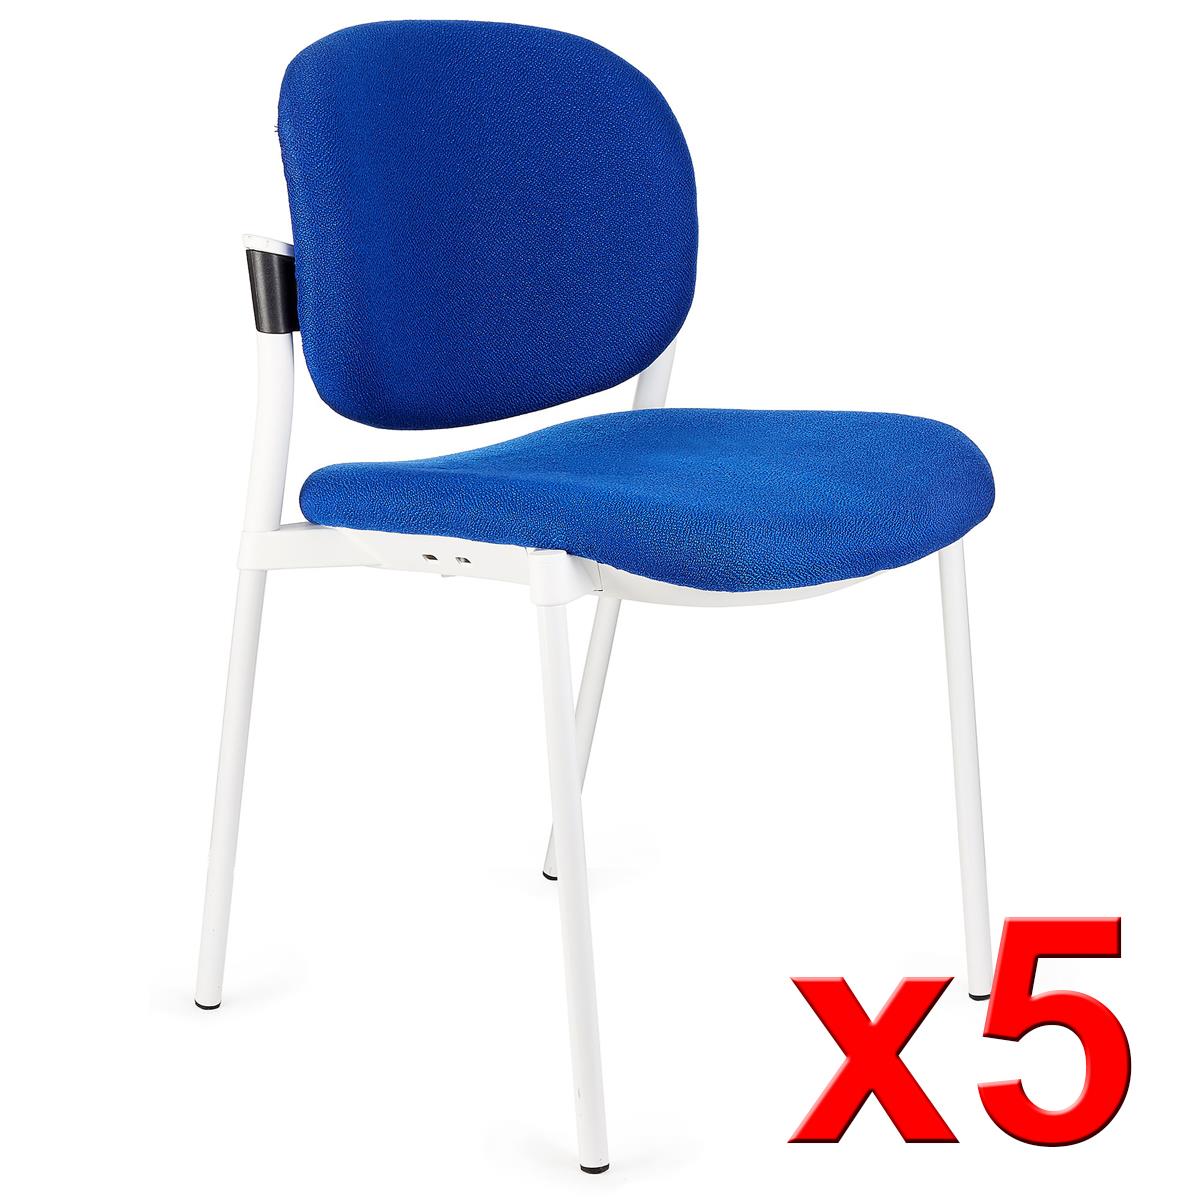 Lote de 5 sillas de Confidente ERIC RESPALDO ACOLCHADO, Cómodas y Prácticas, Apilables, Color Azul